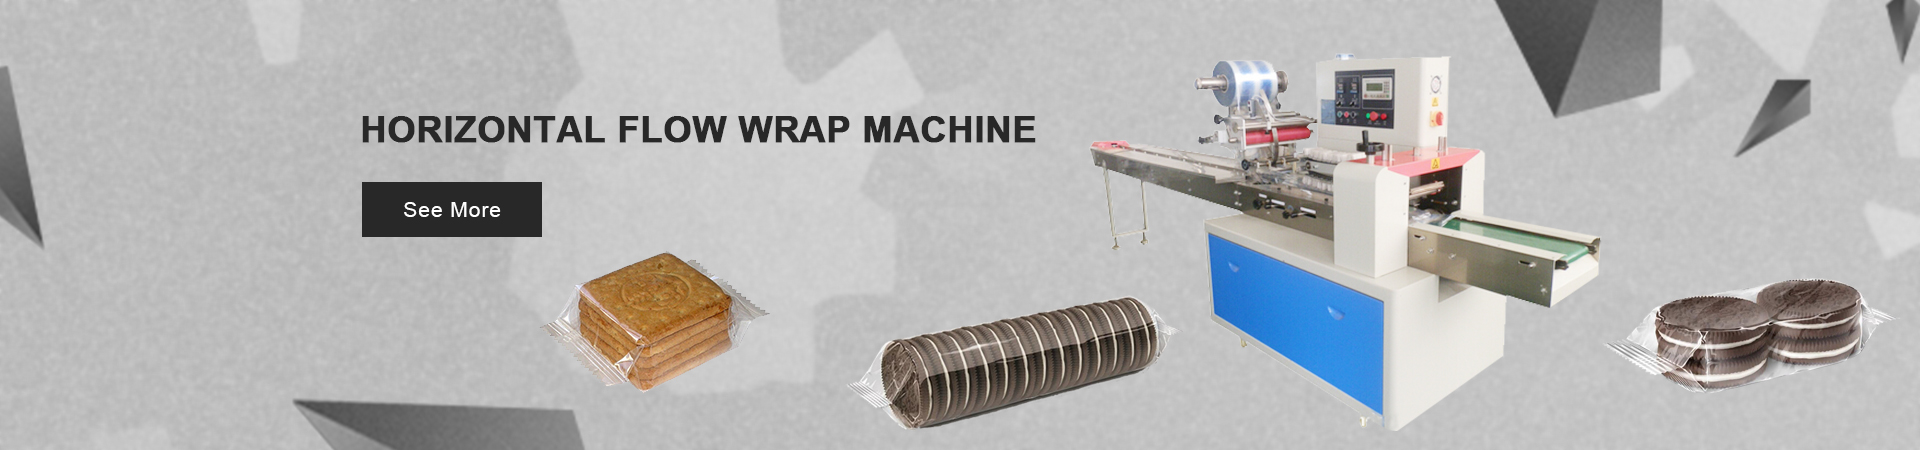 Horizontal Flow Wrap Machine